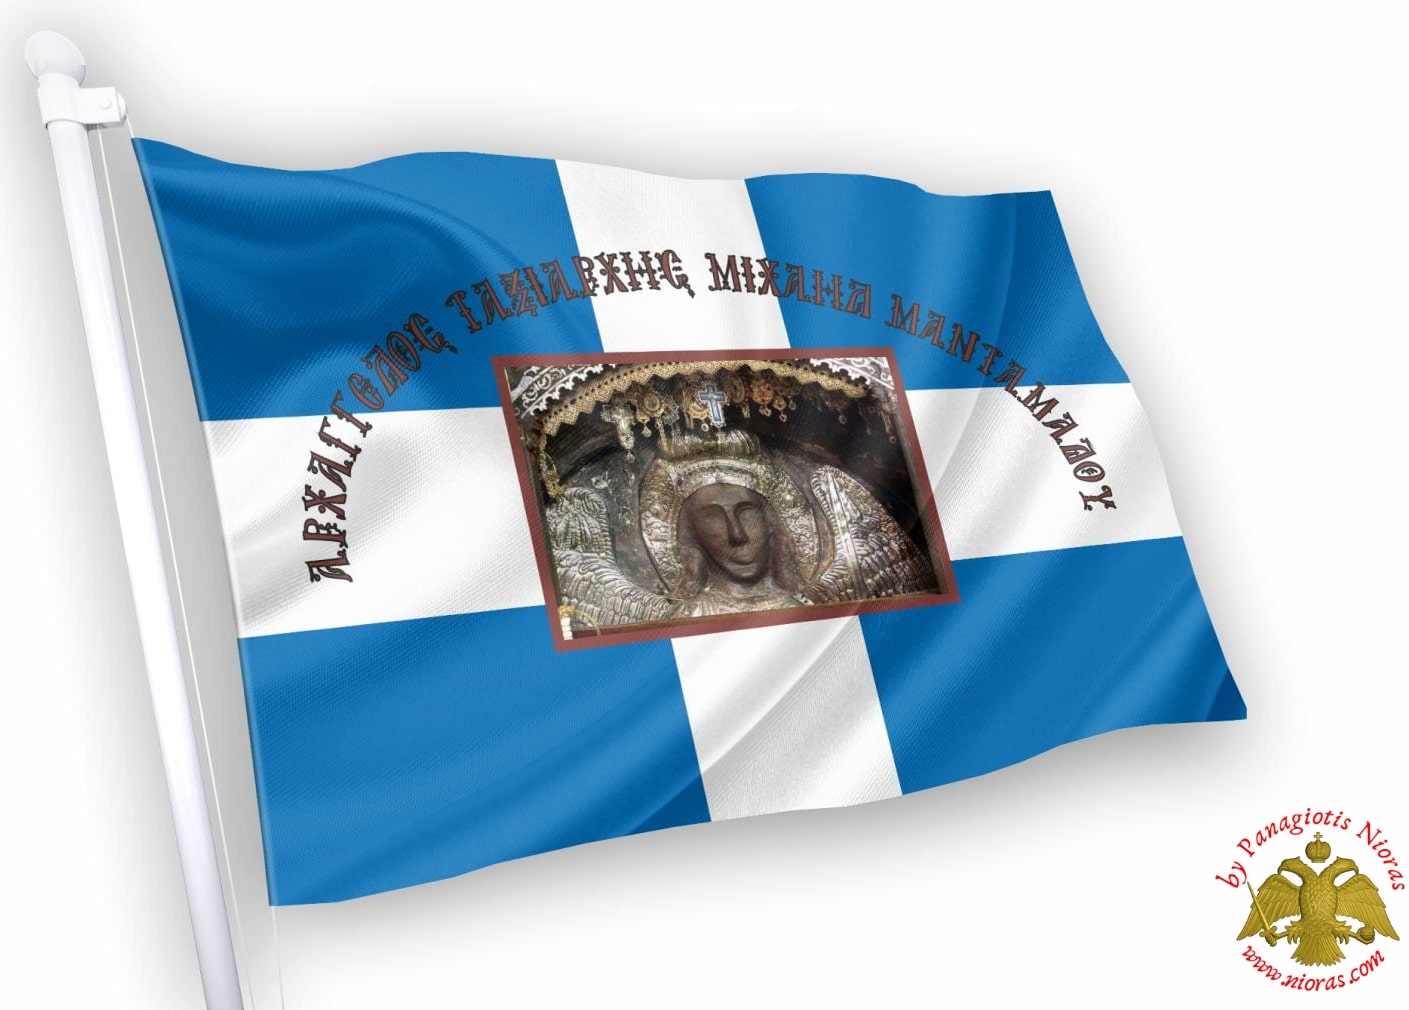 Ταξιάρχη Μιχαήλ Μανταμάδου Ορθόδοξη Ελληνικη Σημαία